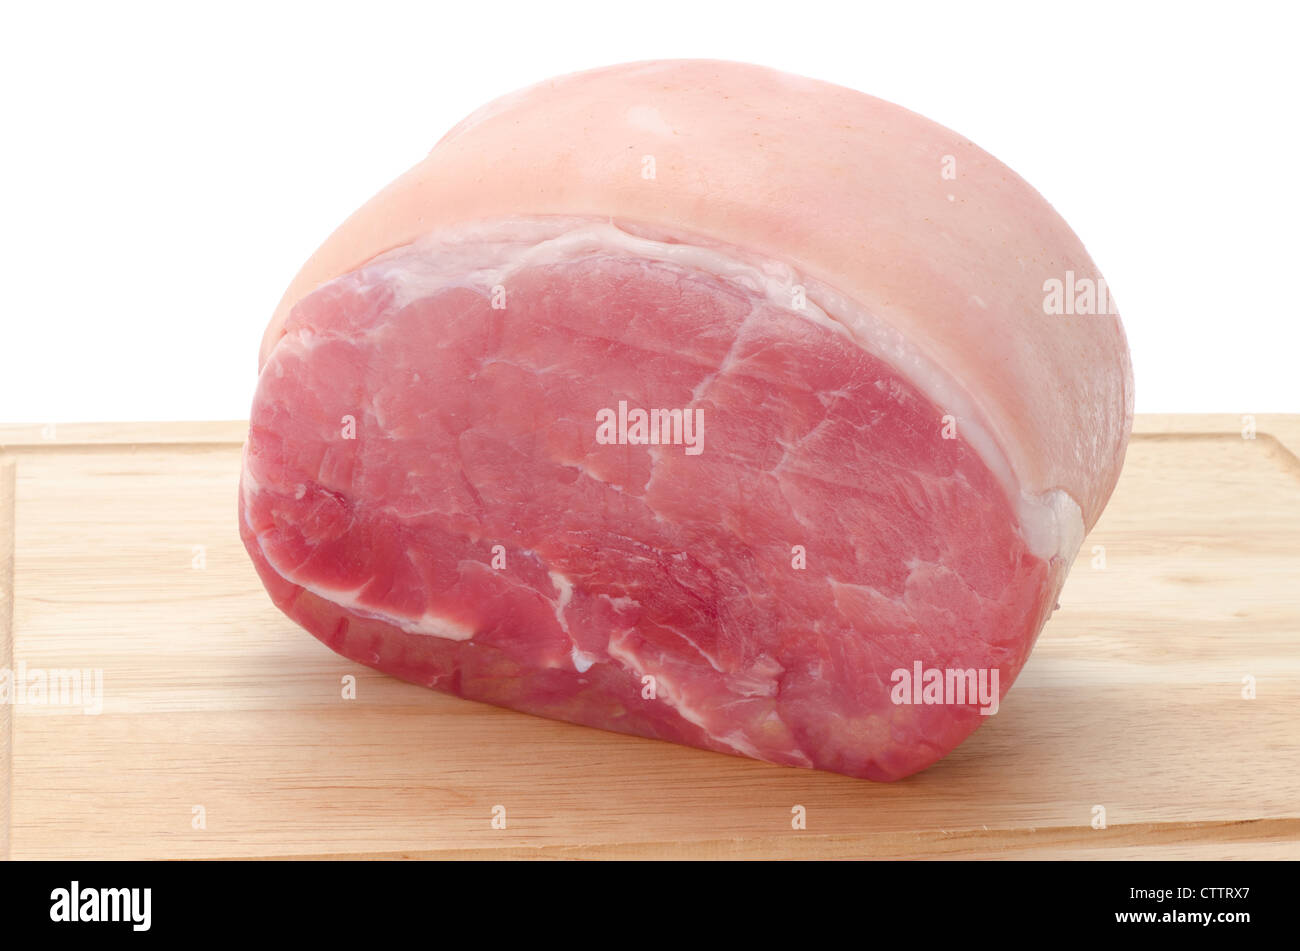 Ein ohne Knochen Schweinefleisch Gammon Gelenk auf ein Holzbrett - Studio gedreht mit weißem Hintergrund Stockfoto